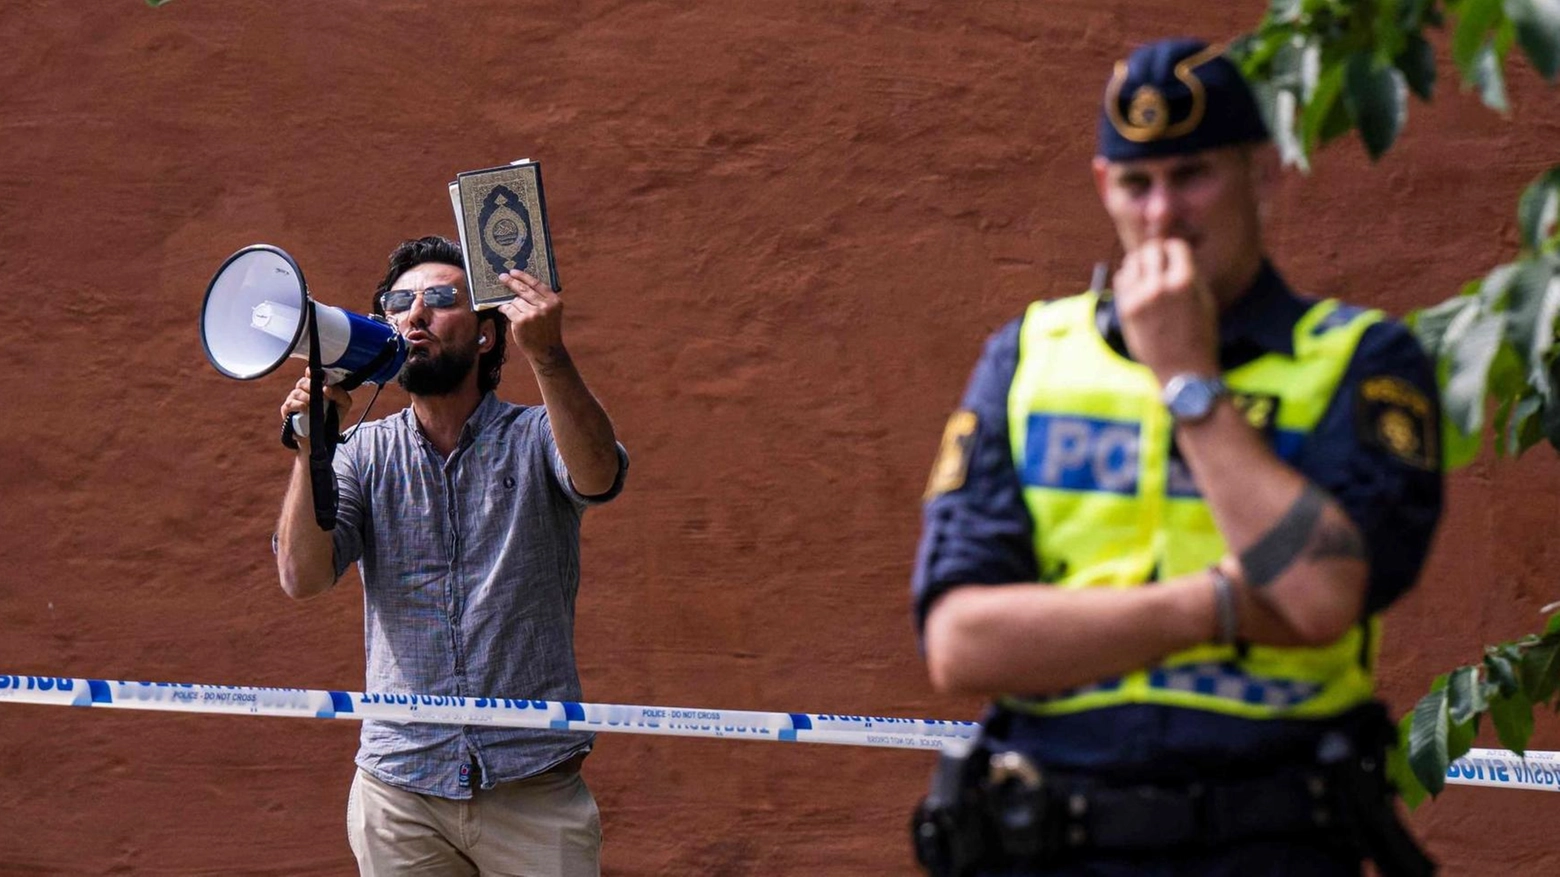 Alta tensione in Svezia  Sì della polizia alla protesta  Bruciato il Corano in piazza